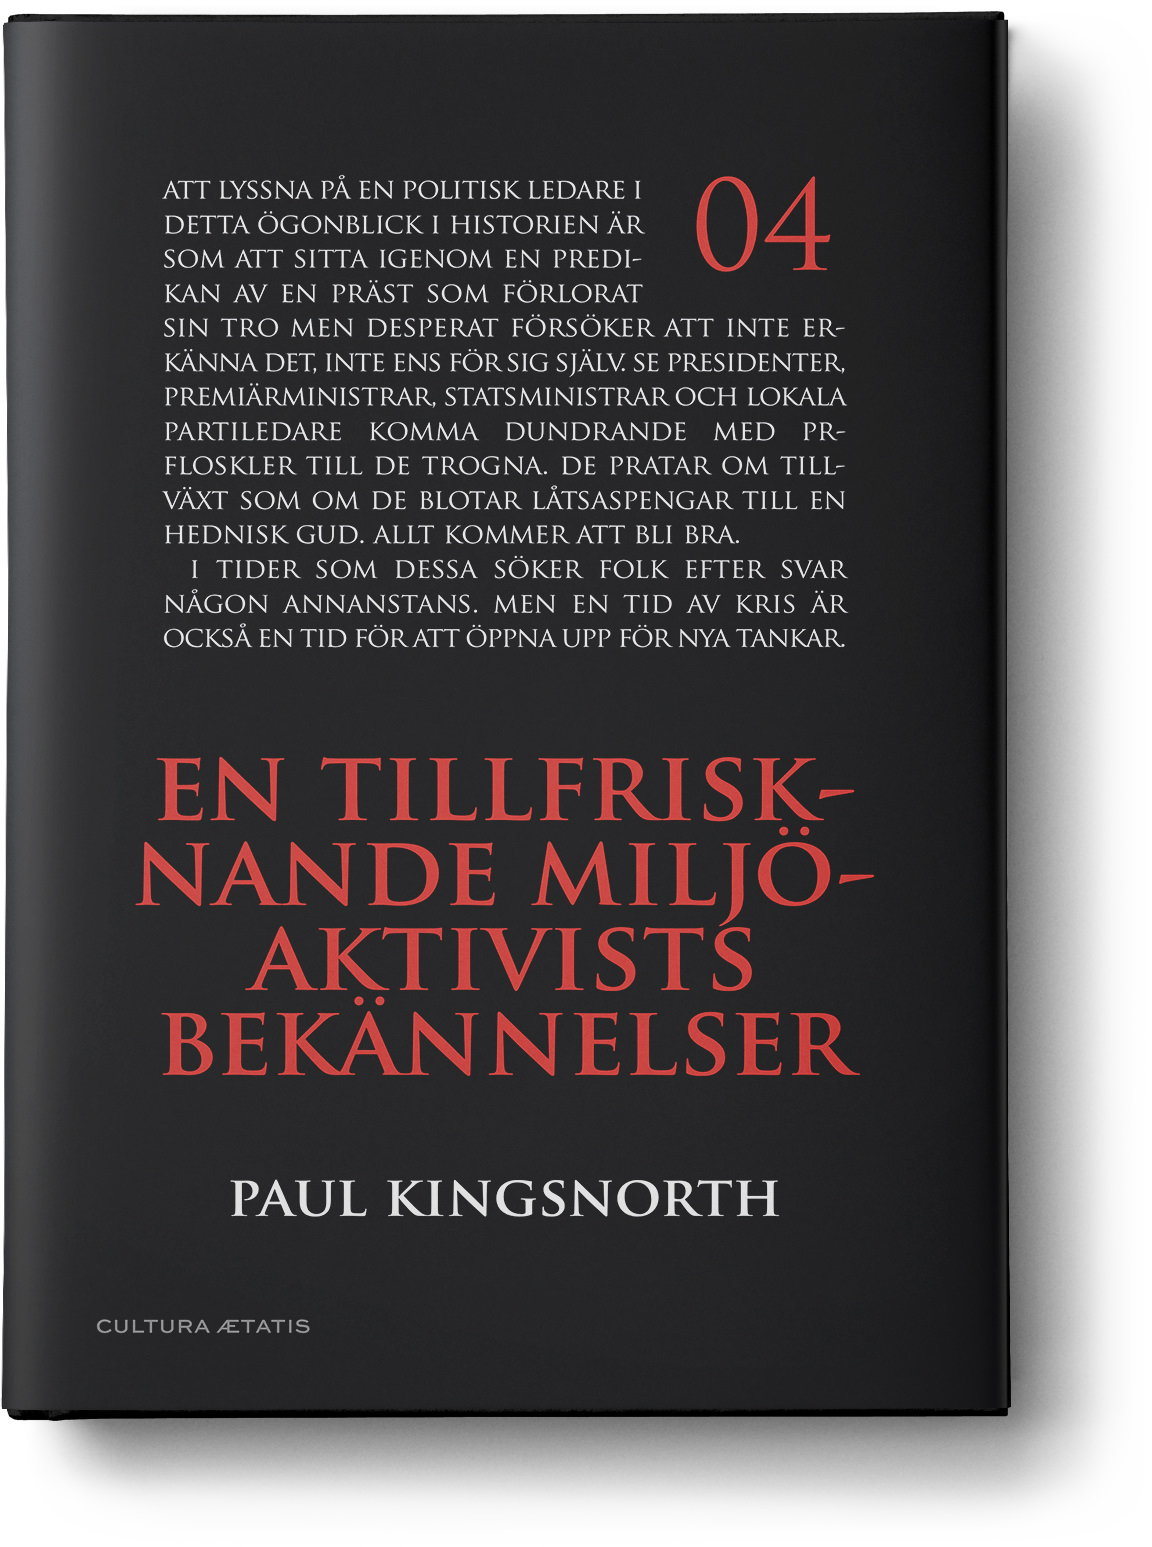 Paul Kingsnorth - En tillfrisknande miljöaktivists bekännelser